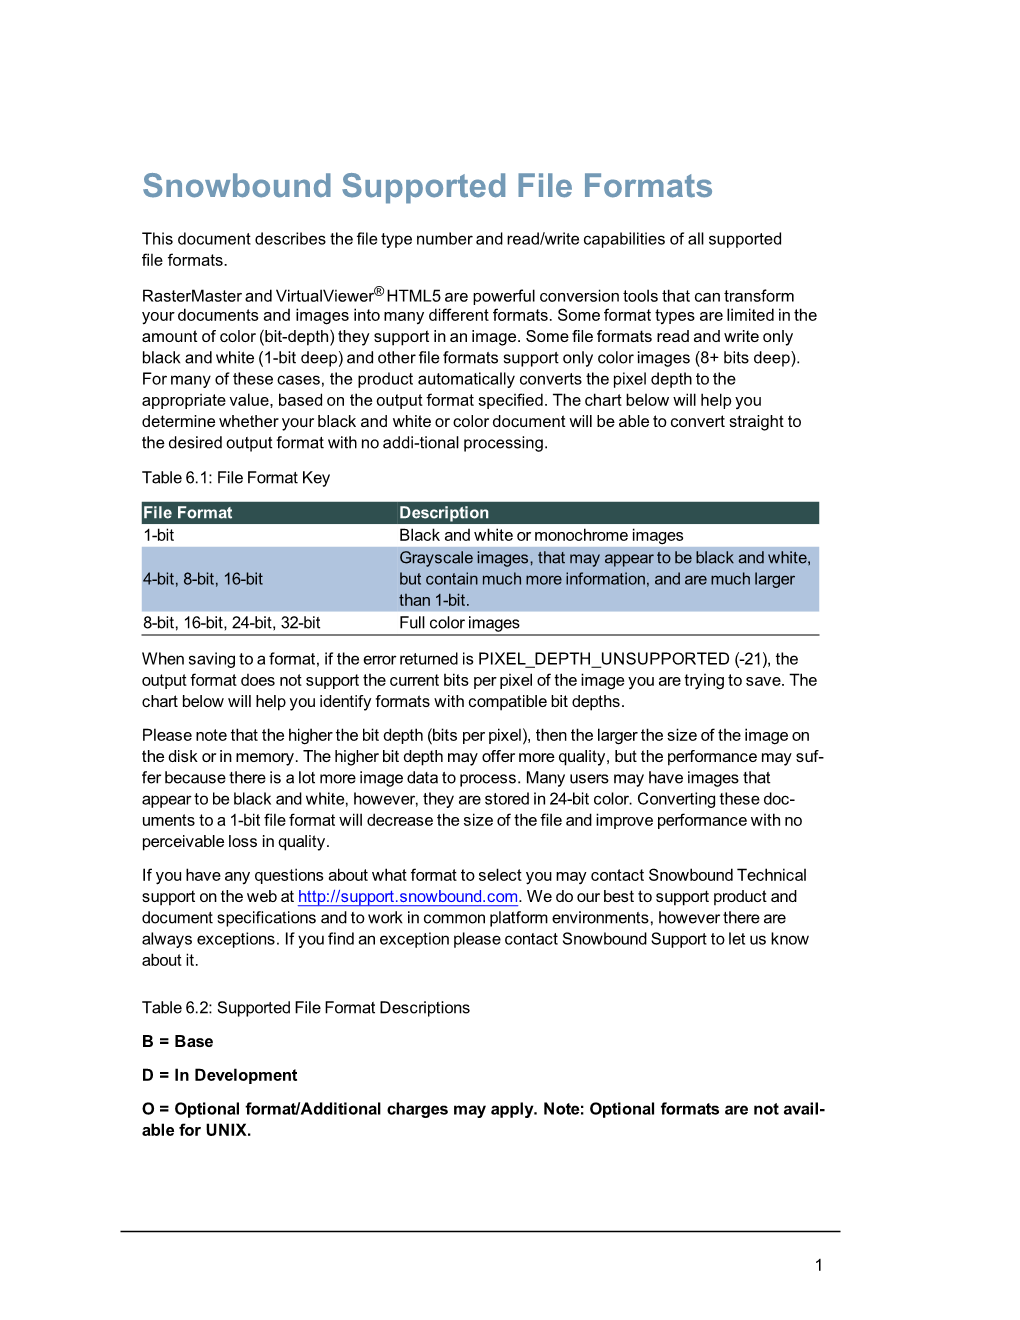 Snowbound File Format Descriptions